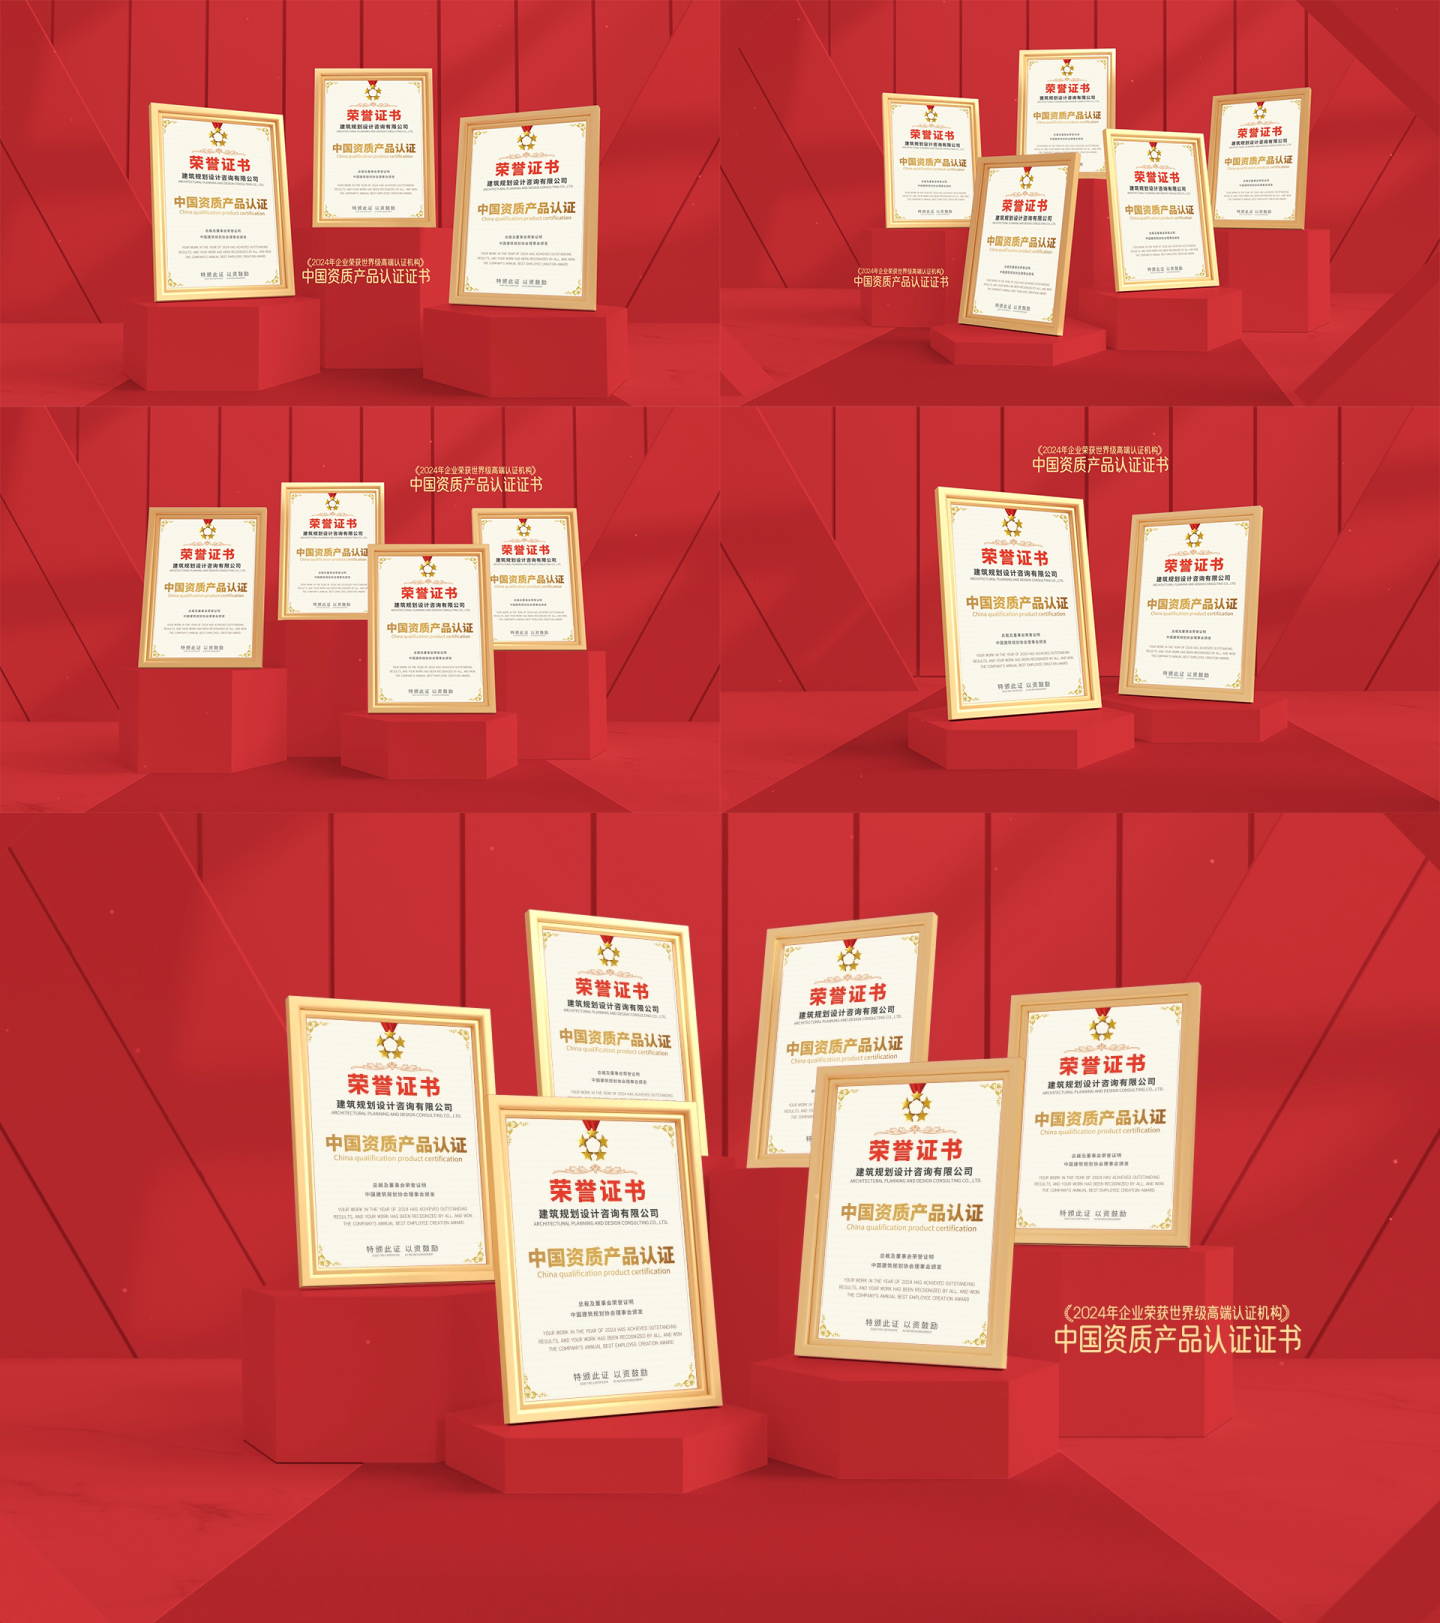 高端红色企业专利荣誉证书展示ae模板